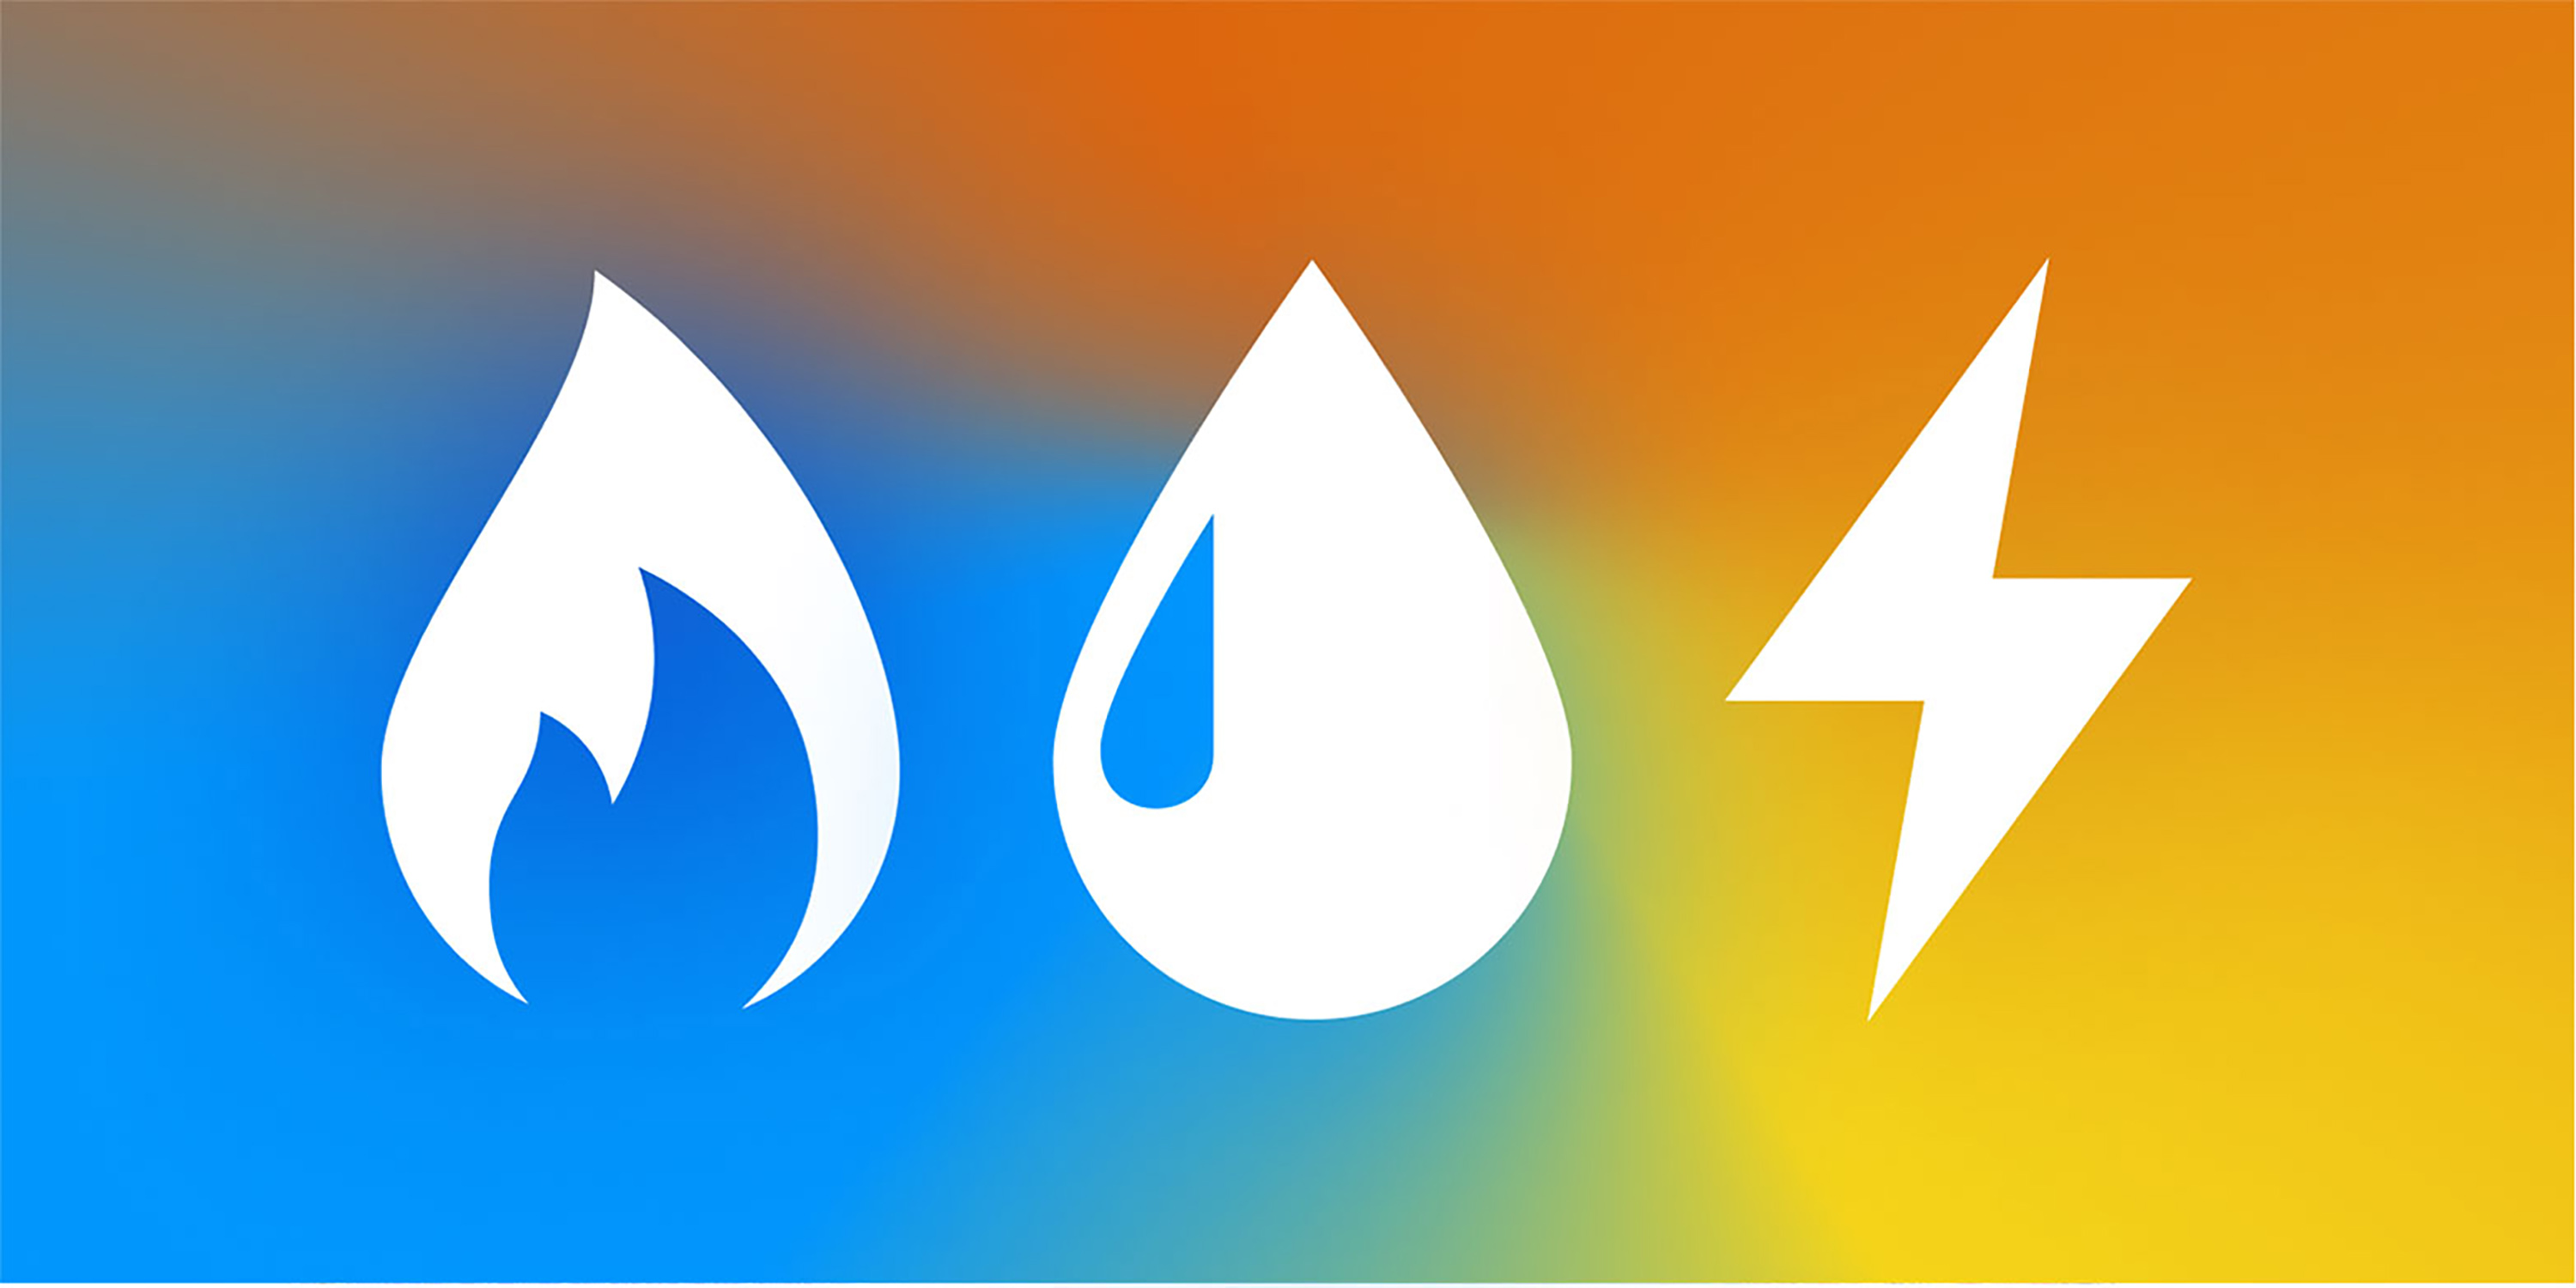 Das Key Visual für mehr Energiesparen an der ETH zeigt Symbole für Heizen, Warmwasser und Strom